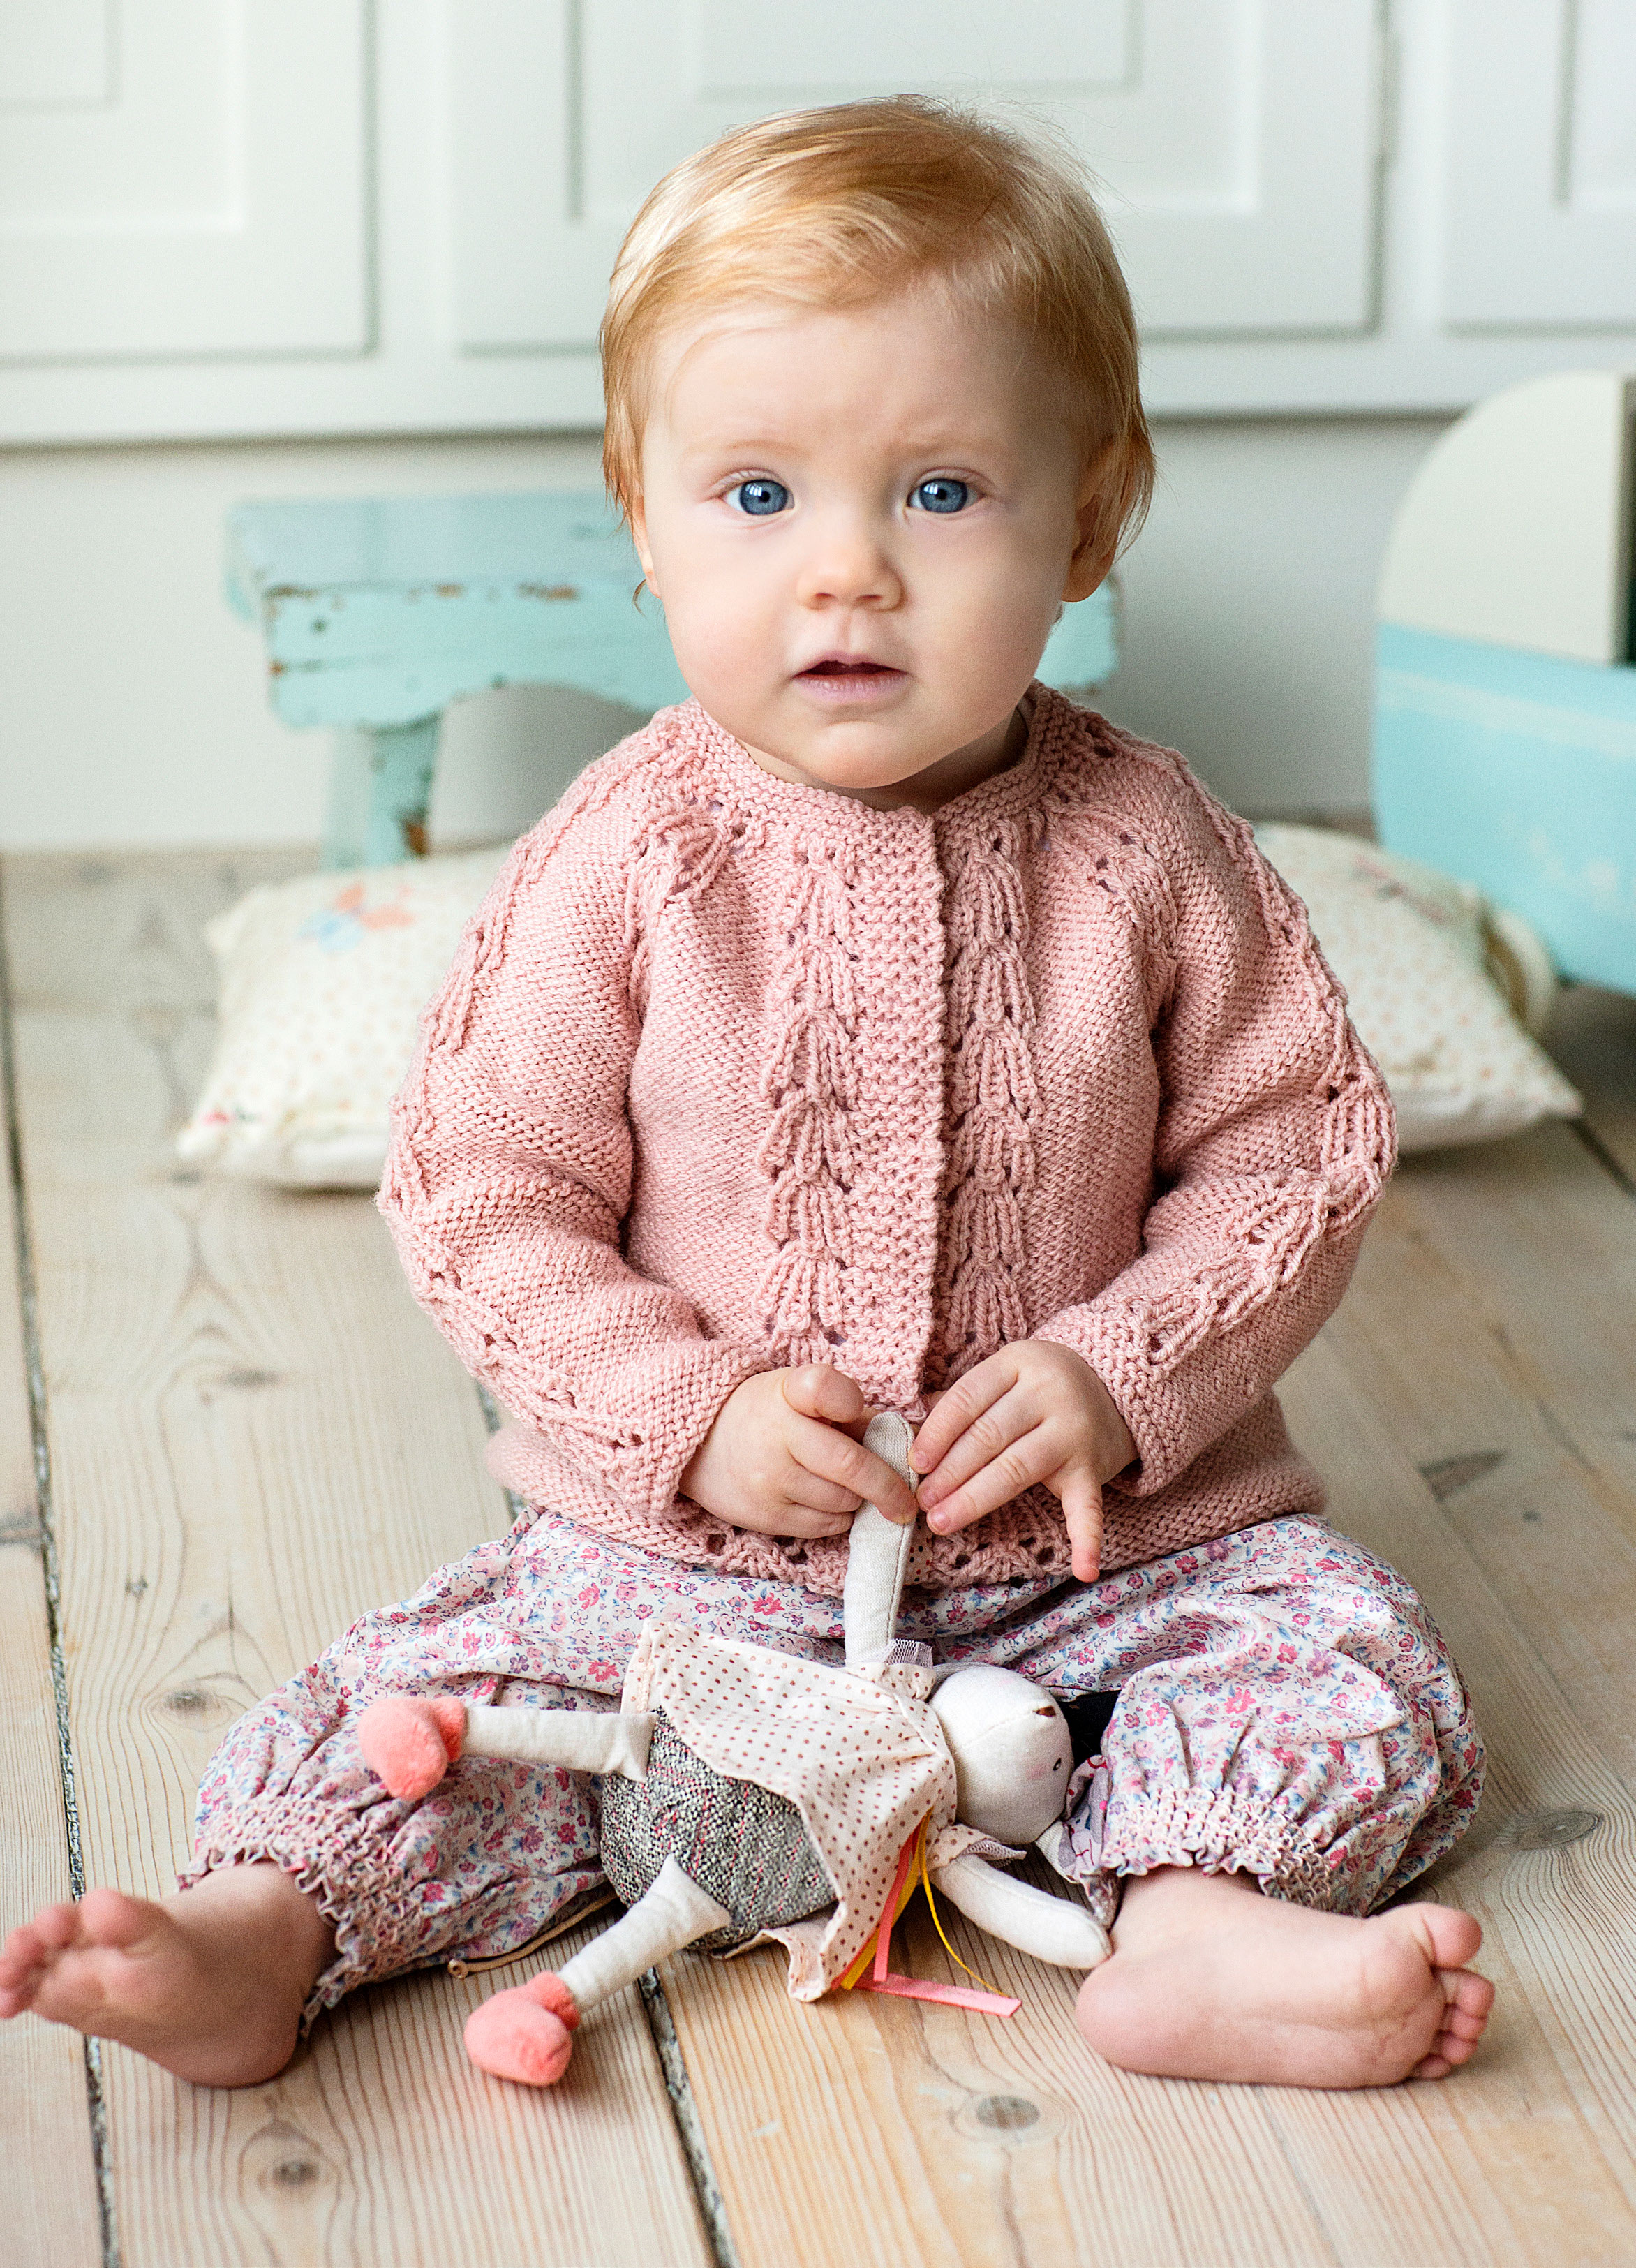 Strik en fin babytrøje omvendt glat - se opskriften her - ALT.dk